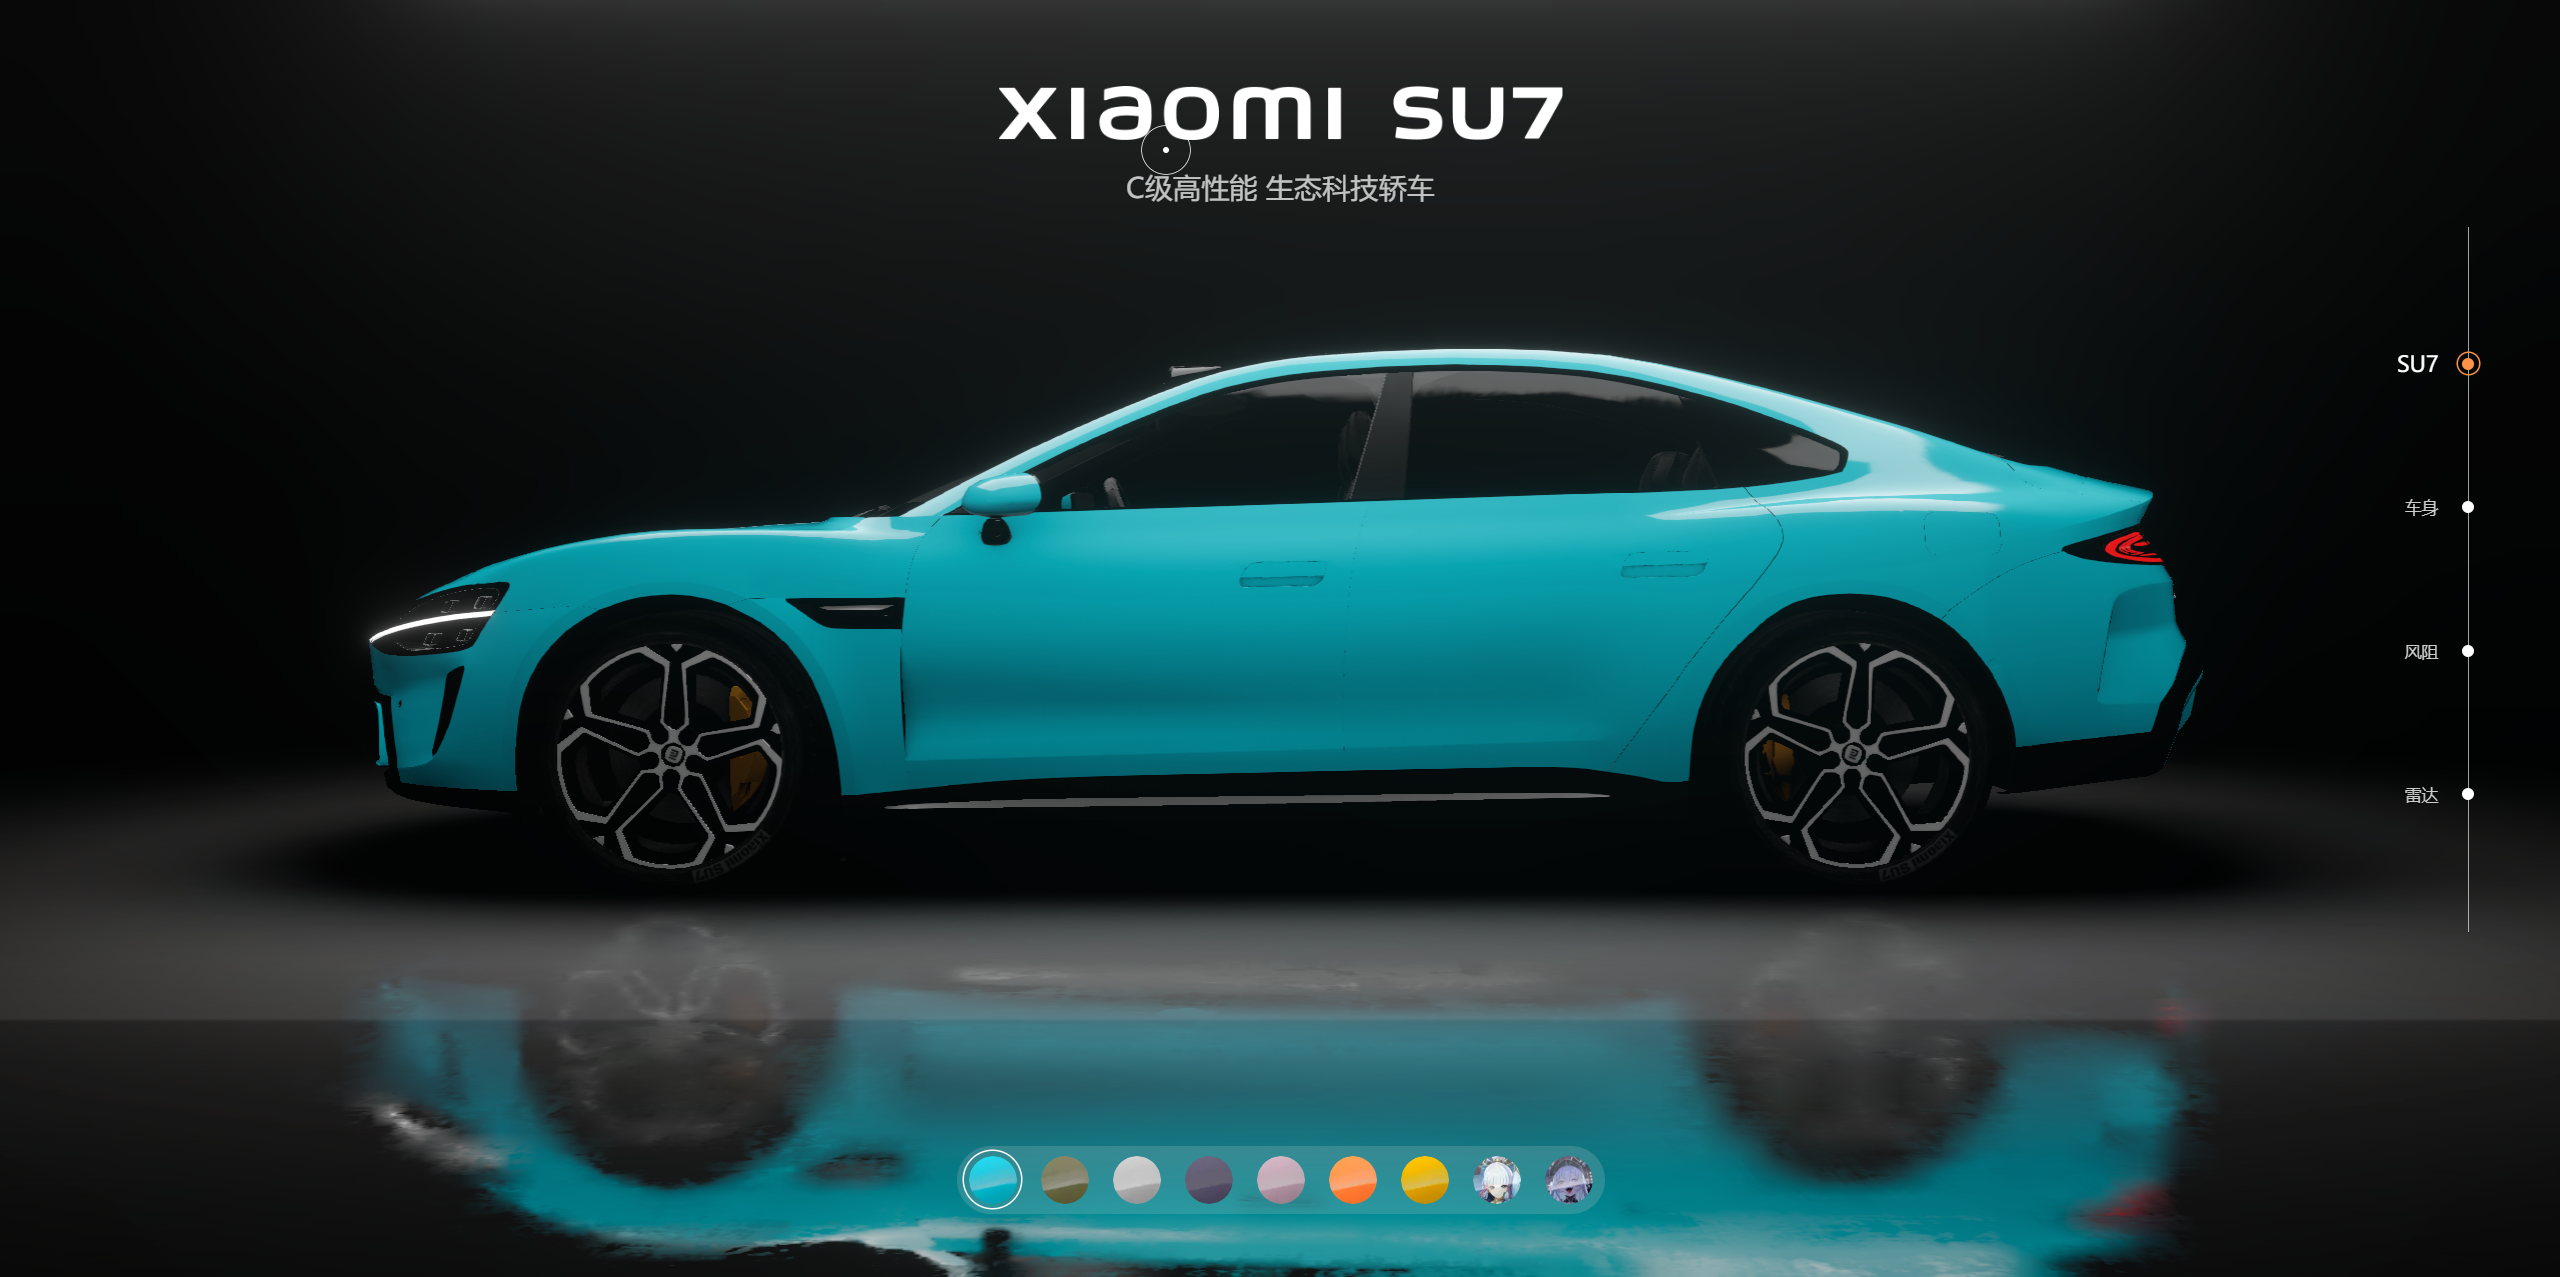 非常好看的响应式小米汽车 su7 全色系展示 html 源码